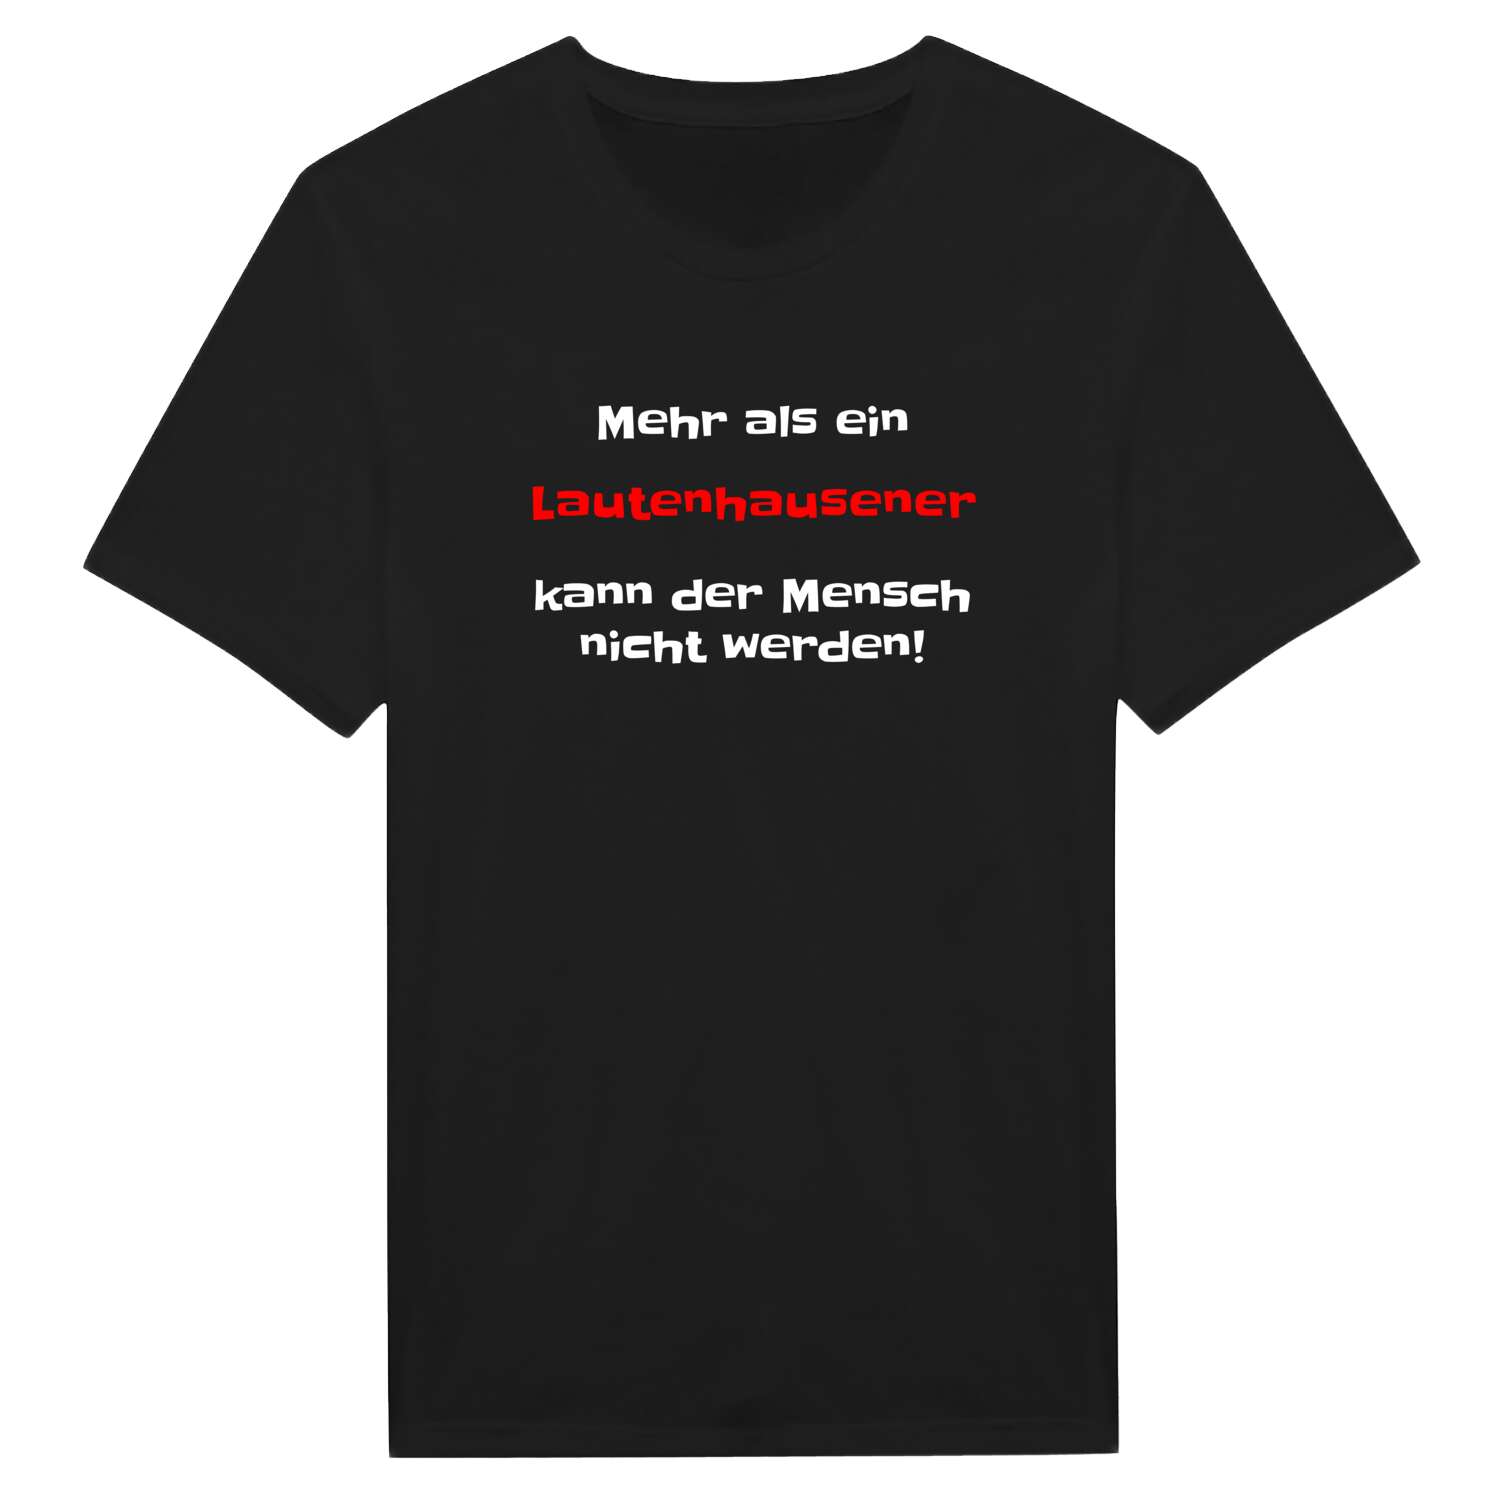 Lautenhausen T-Shirt »Mehr als ein«